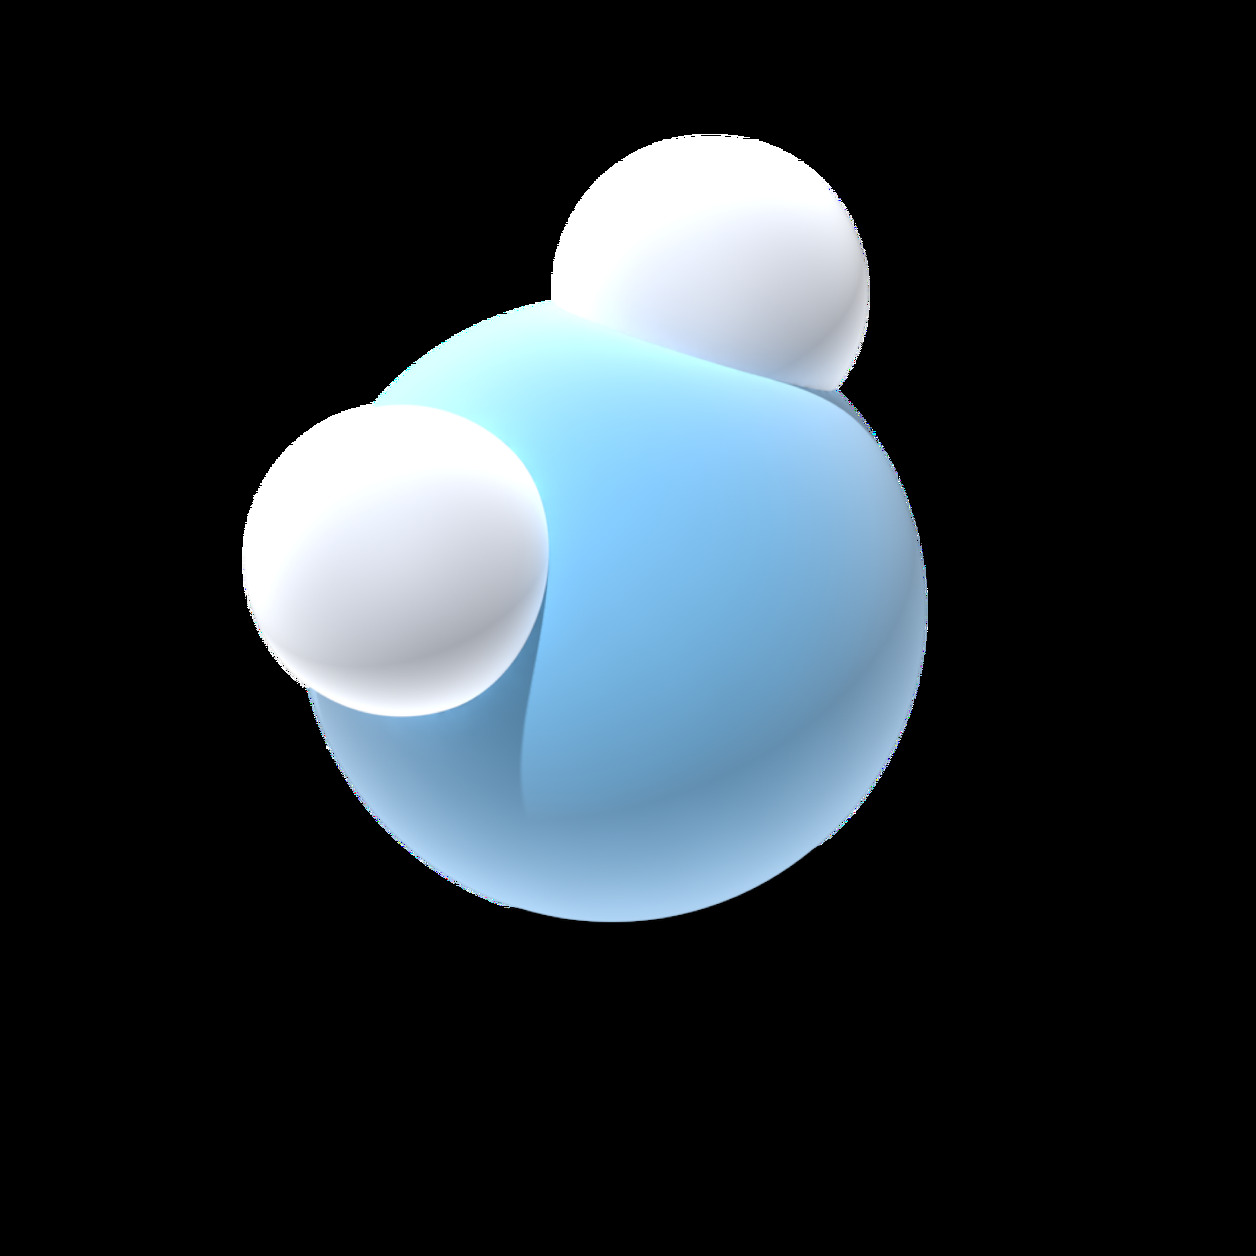 Vattenmolekyl